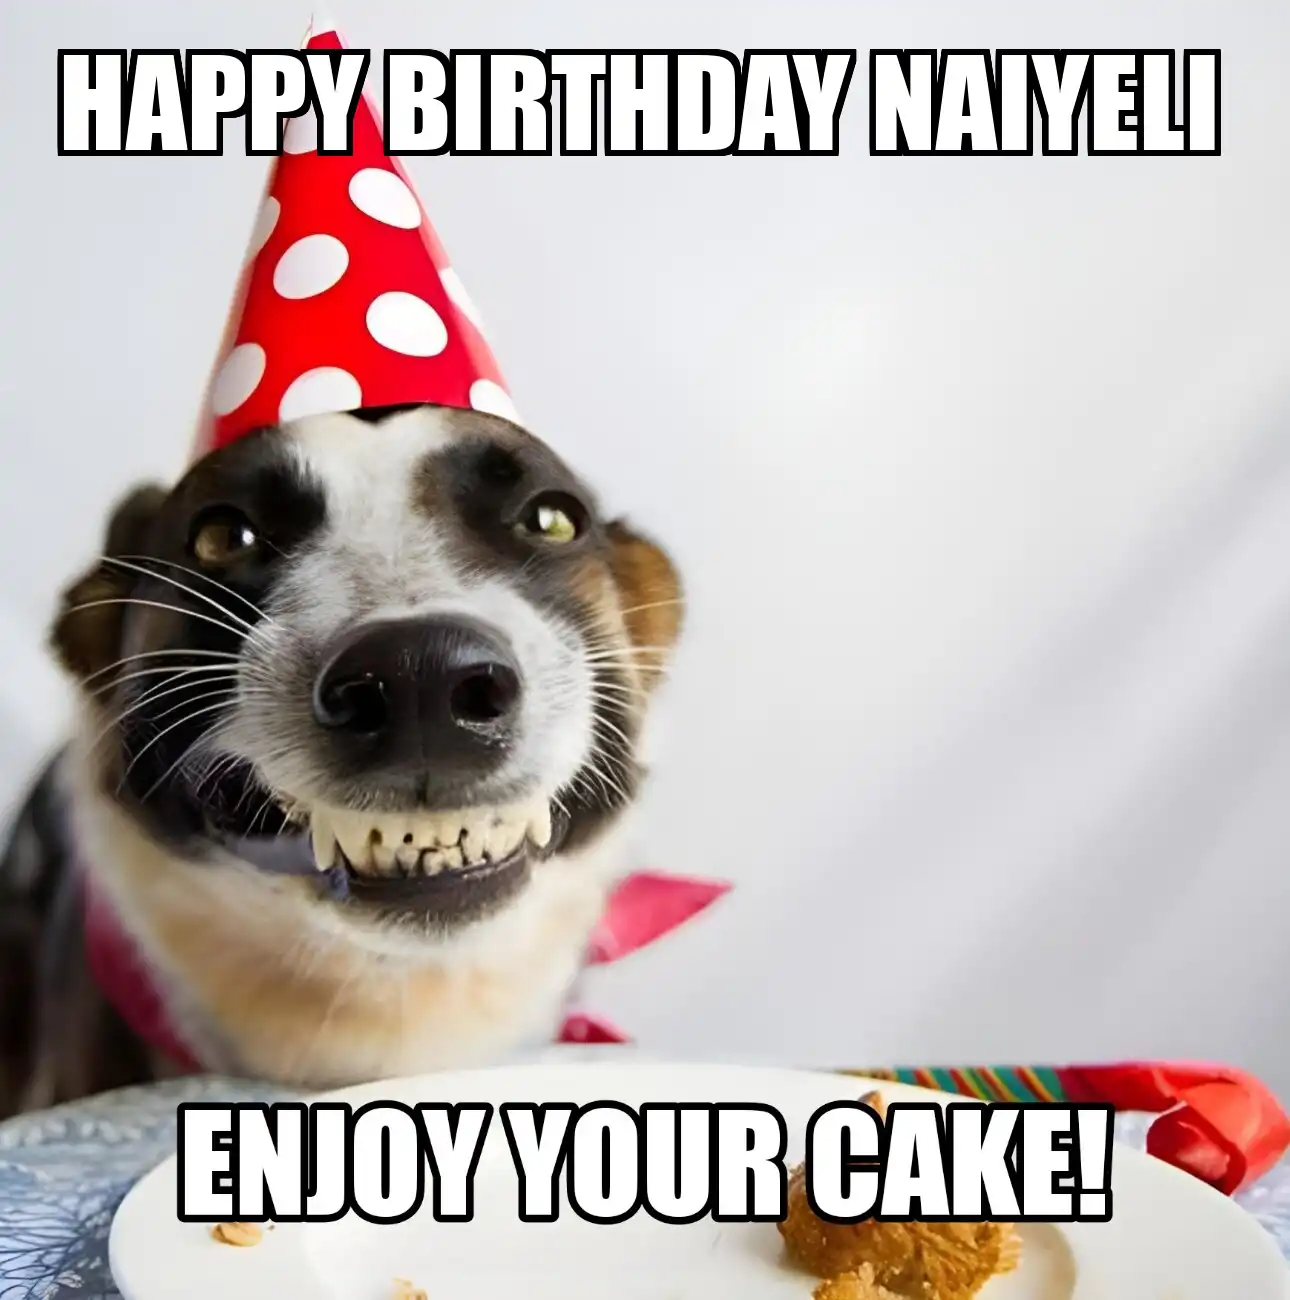 Happy Birthday Naiyeli Enjoy Your Cake Dog Meme